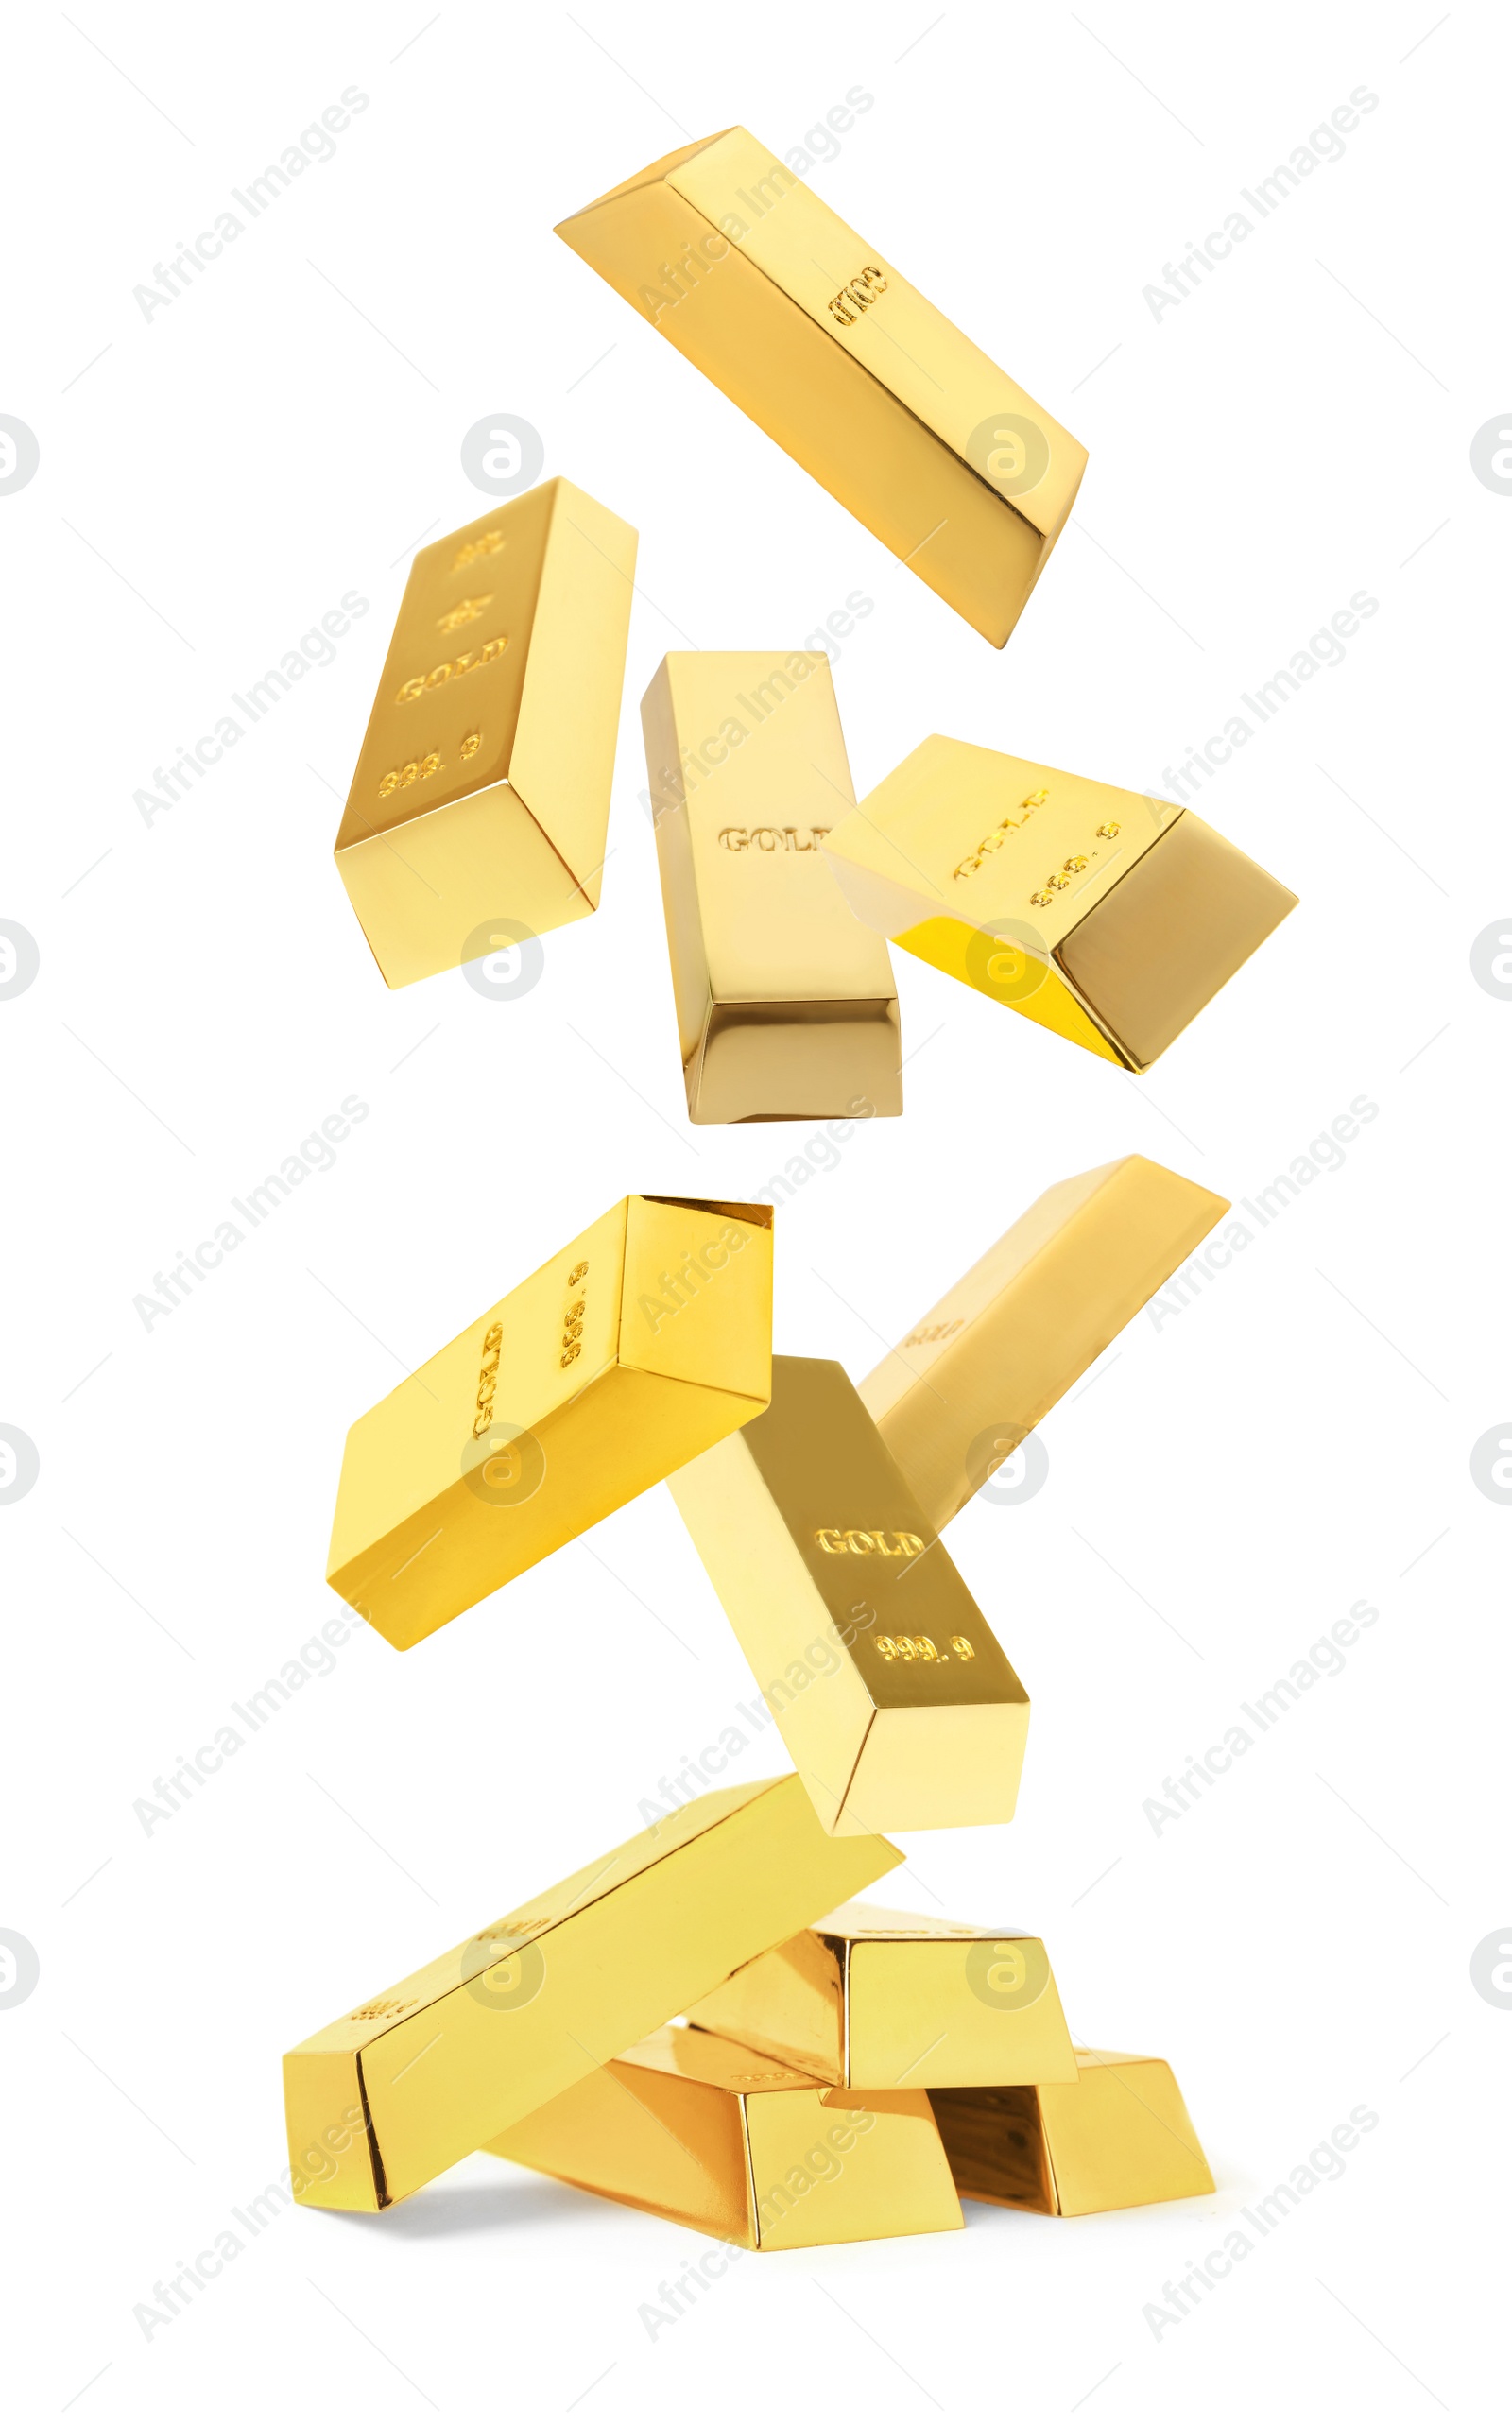 Image of Shiny gold bars falling onto heap on white background